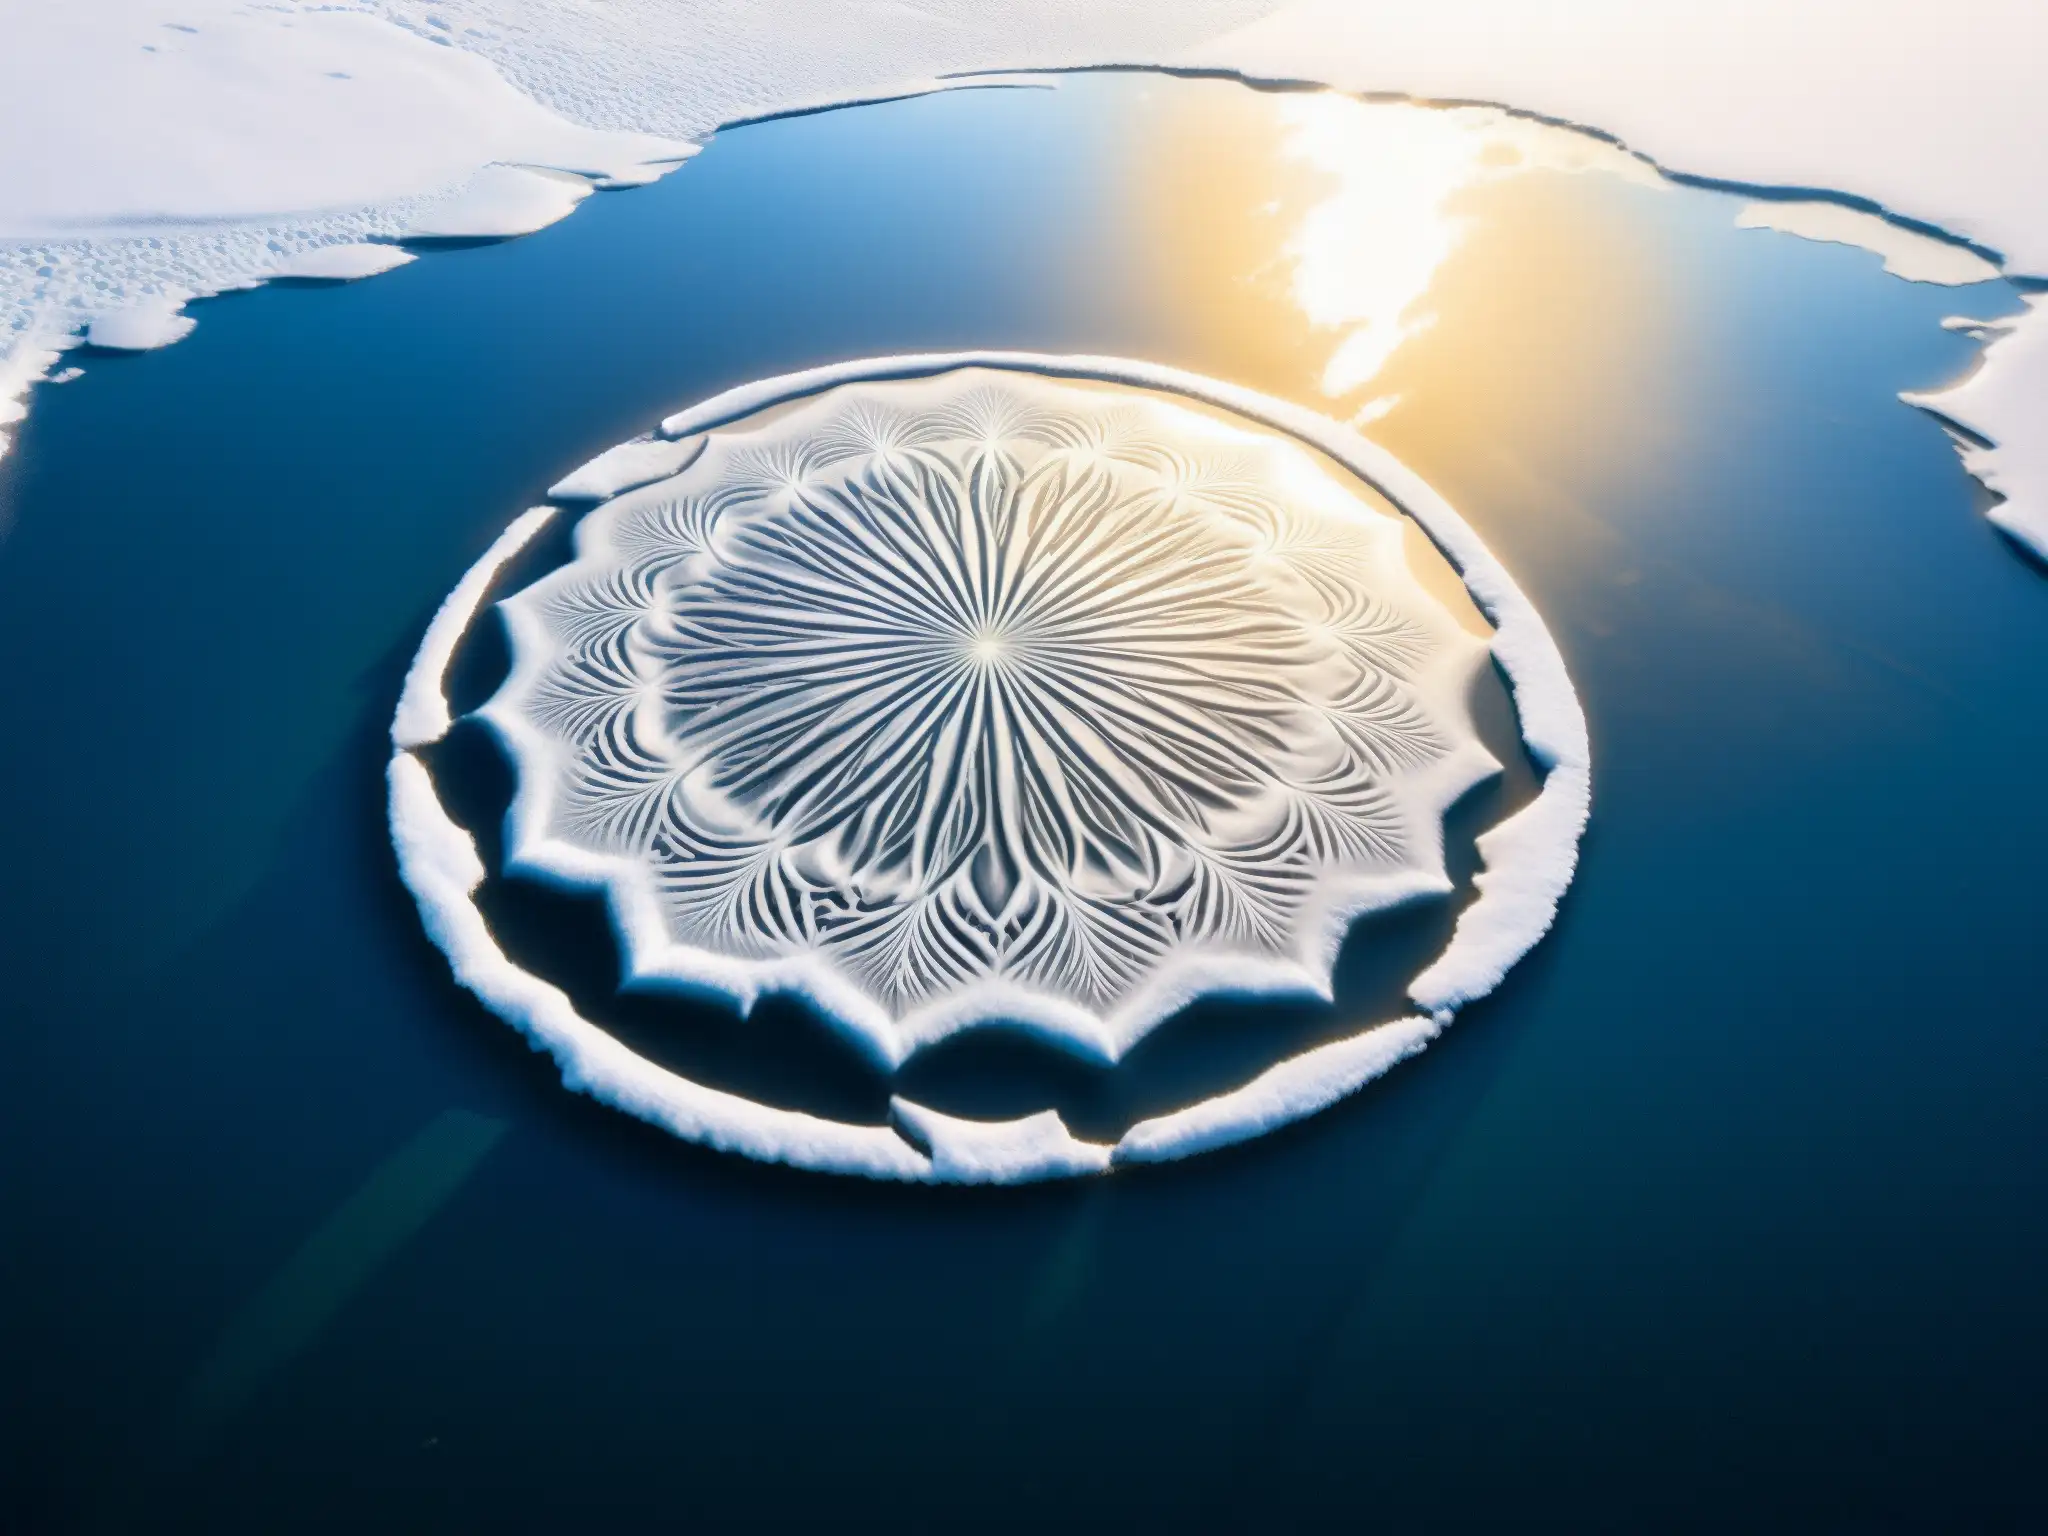 Un círculo de hielo flotando en un río, con patrones detallados y luz reflejada